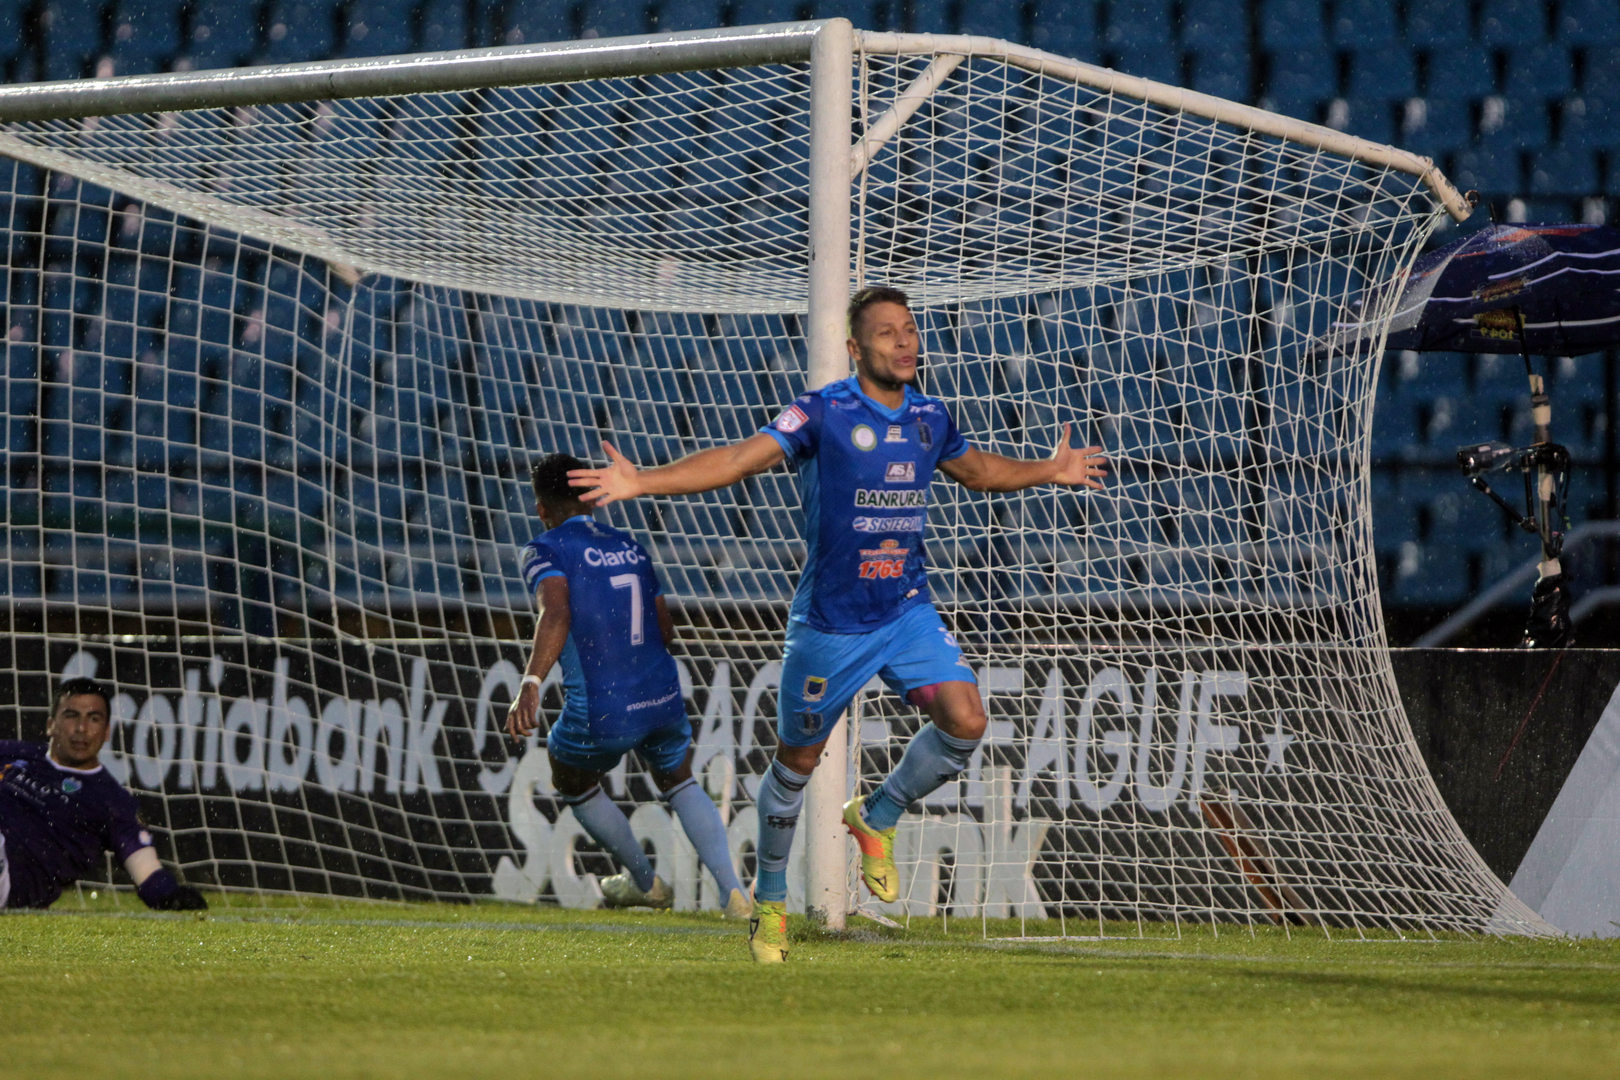 El campeón Santa Lucía FC debutó con un triunfo y goleada 3-0 en la Liga de Concacaf contra el Metropolitan de Puerto Rico. El juego se disputó a puerta cerrada en el Estadio Nacional Doroteo Guamuch Flores.